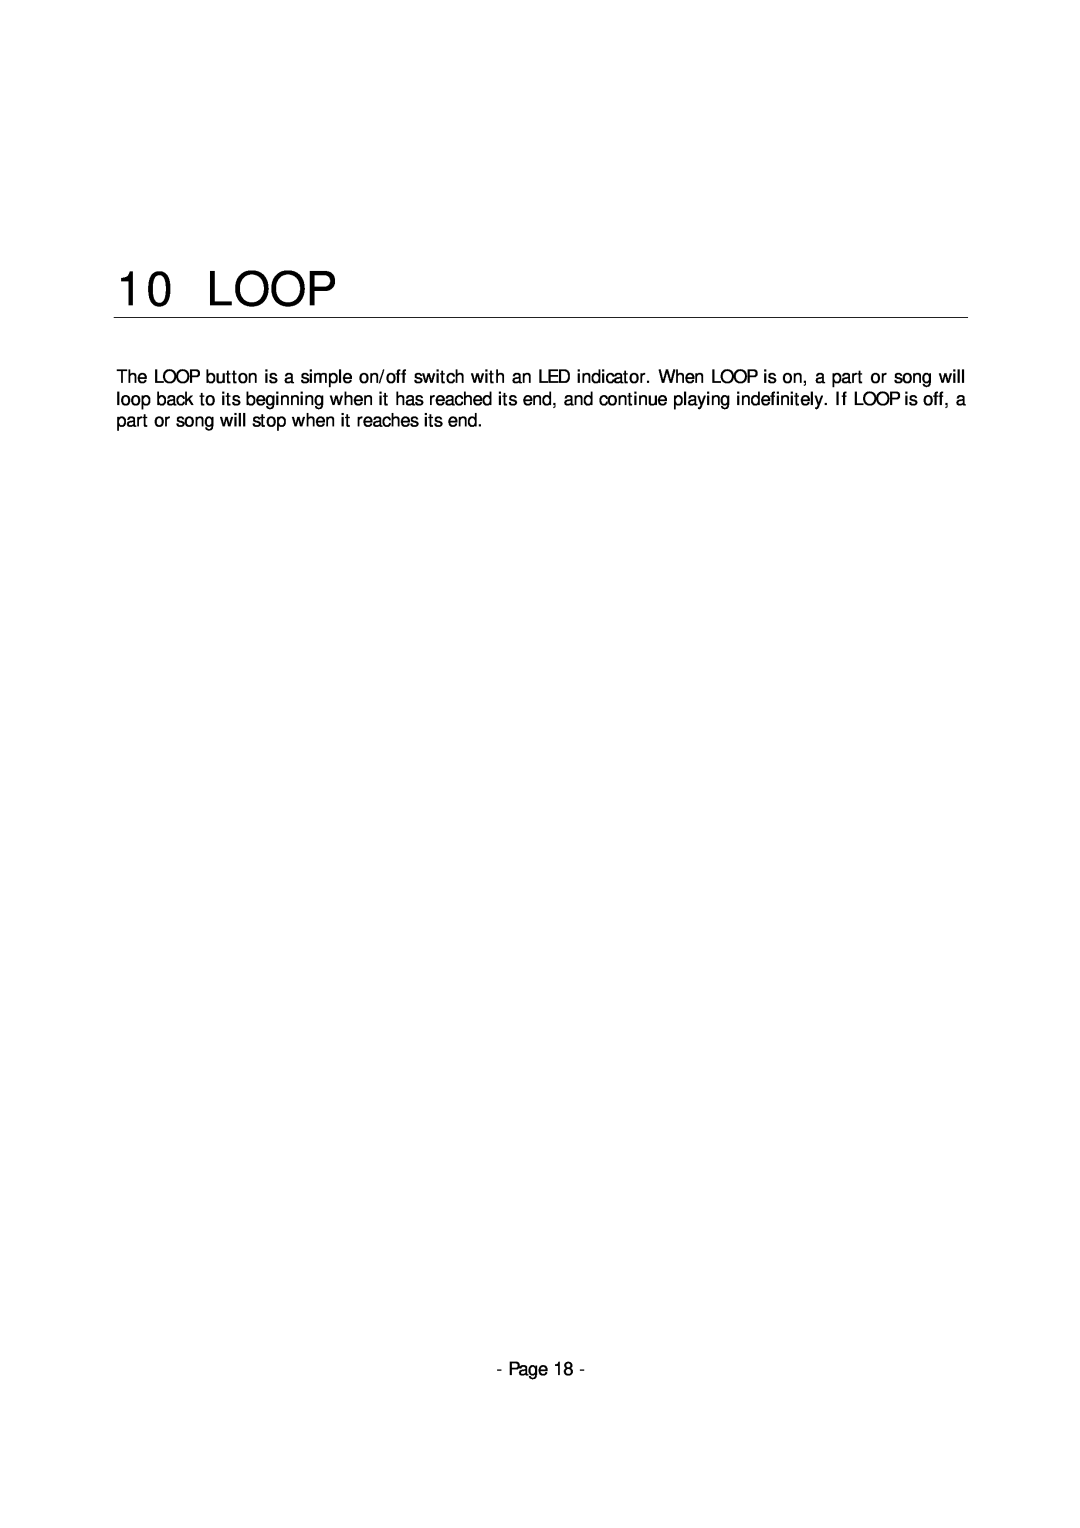 Alesis MMT-8 manual Loop, Page 